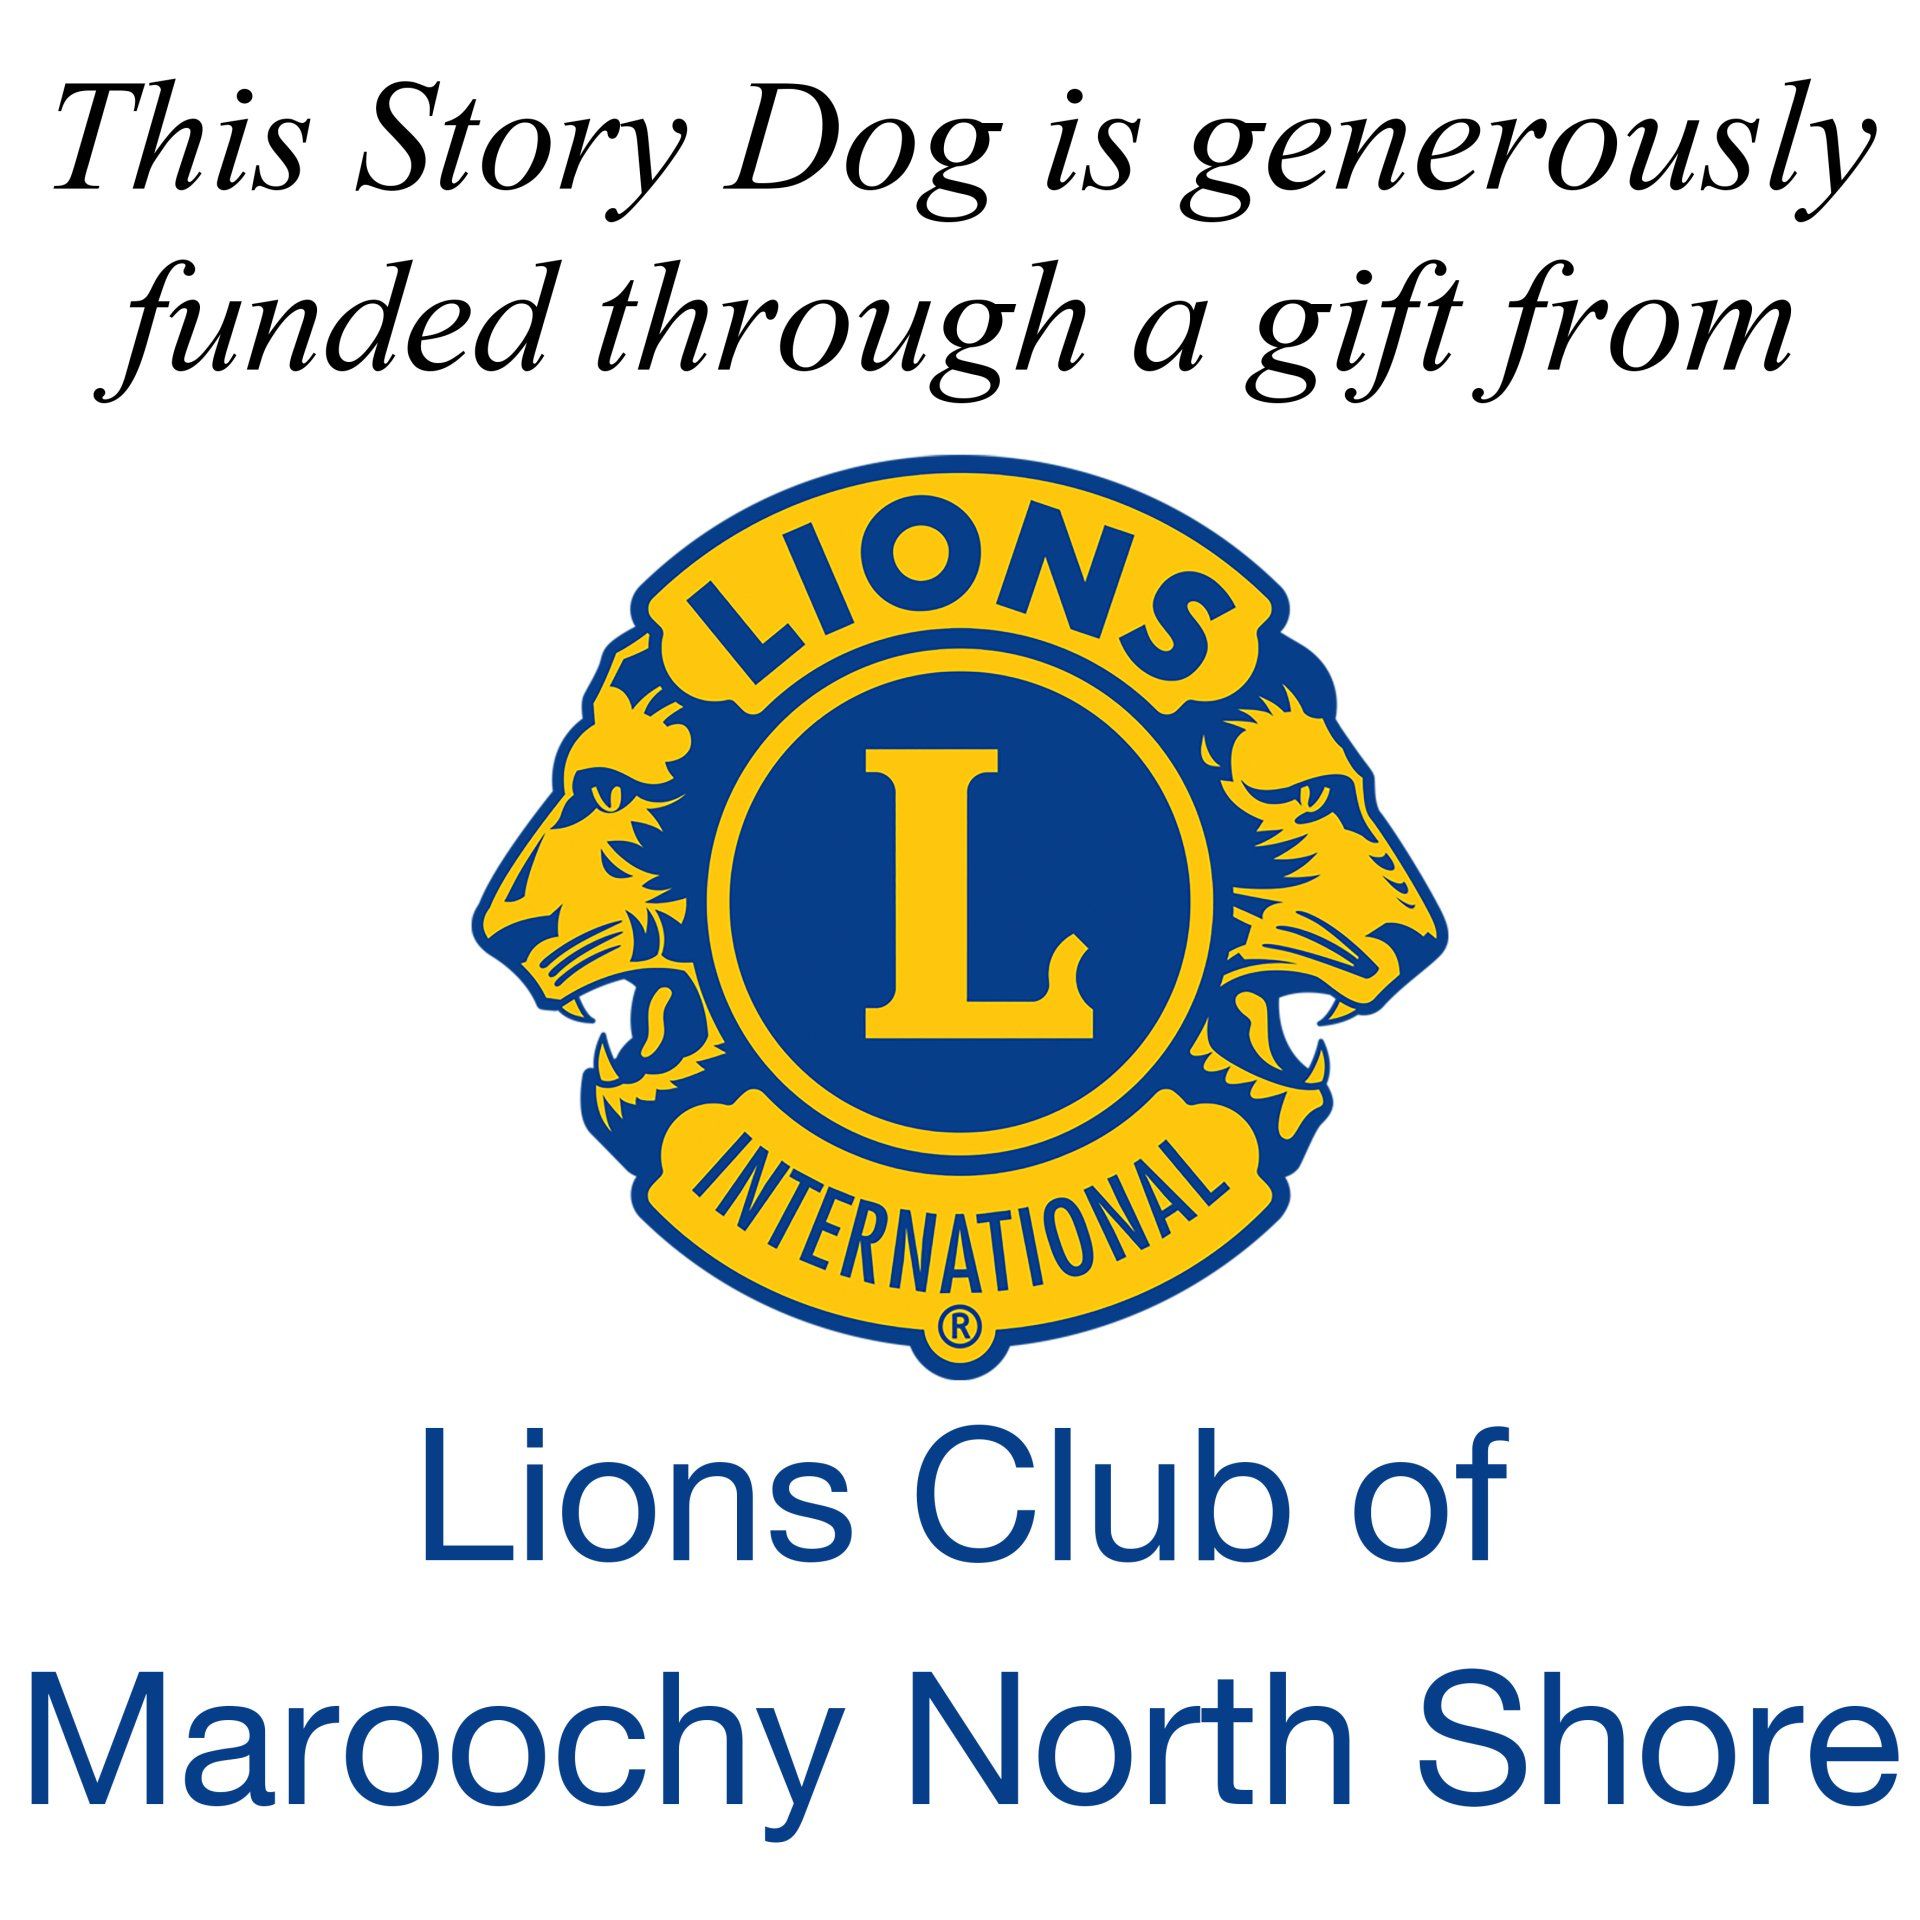 Maroochy North Shore Lions